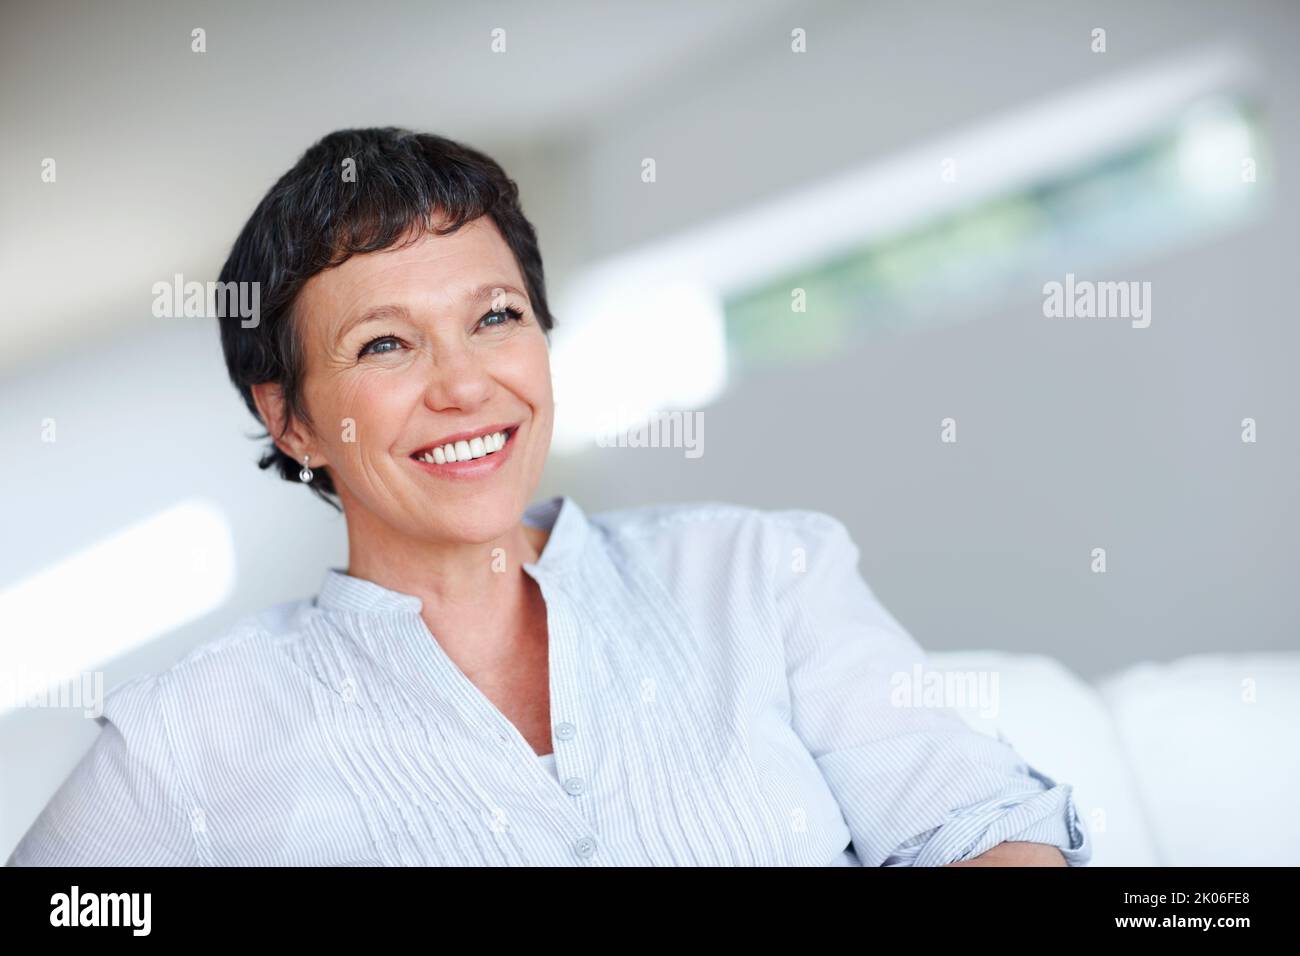 Reife Frau mit selbstbewussten Lächeln. Nahaufnahme einer schönen, reifen Frau, die lächelt, während sie auf der Couch sitzt. Stockfoto